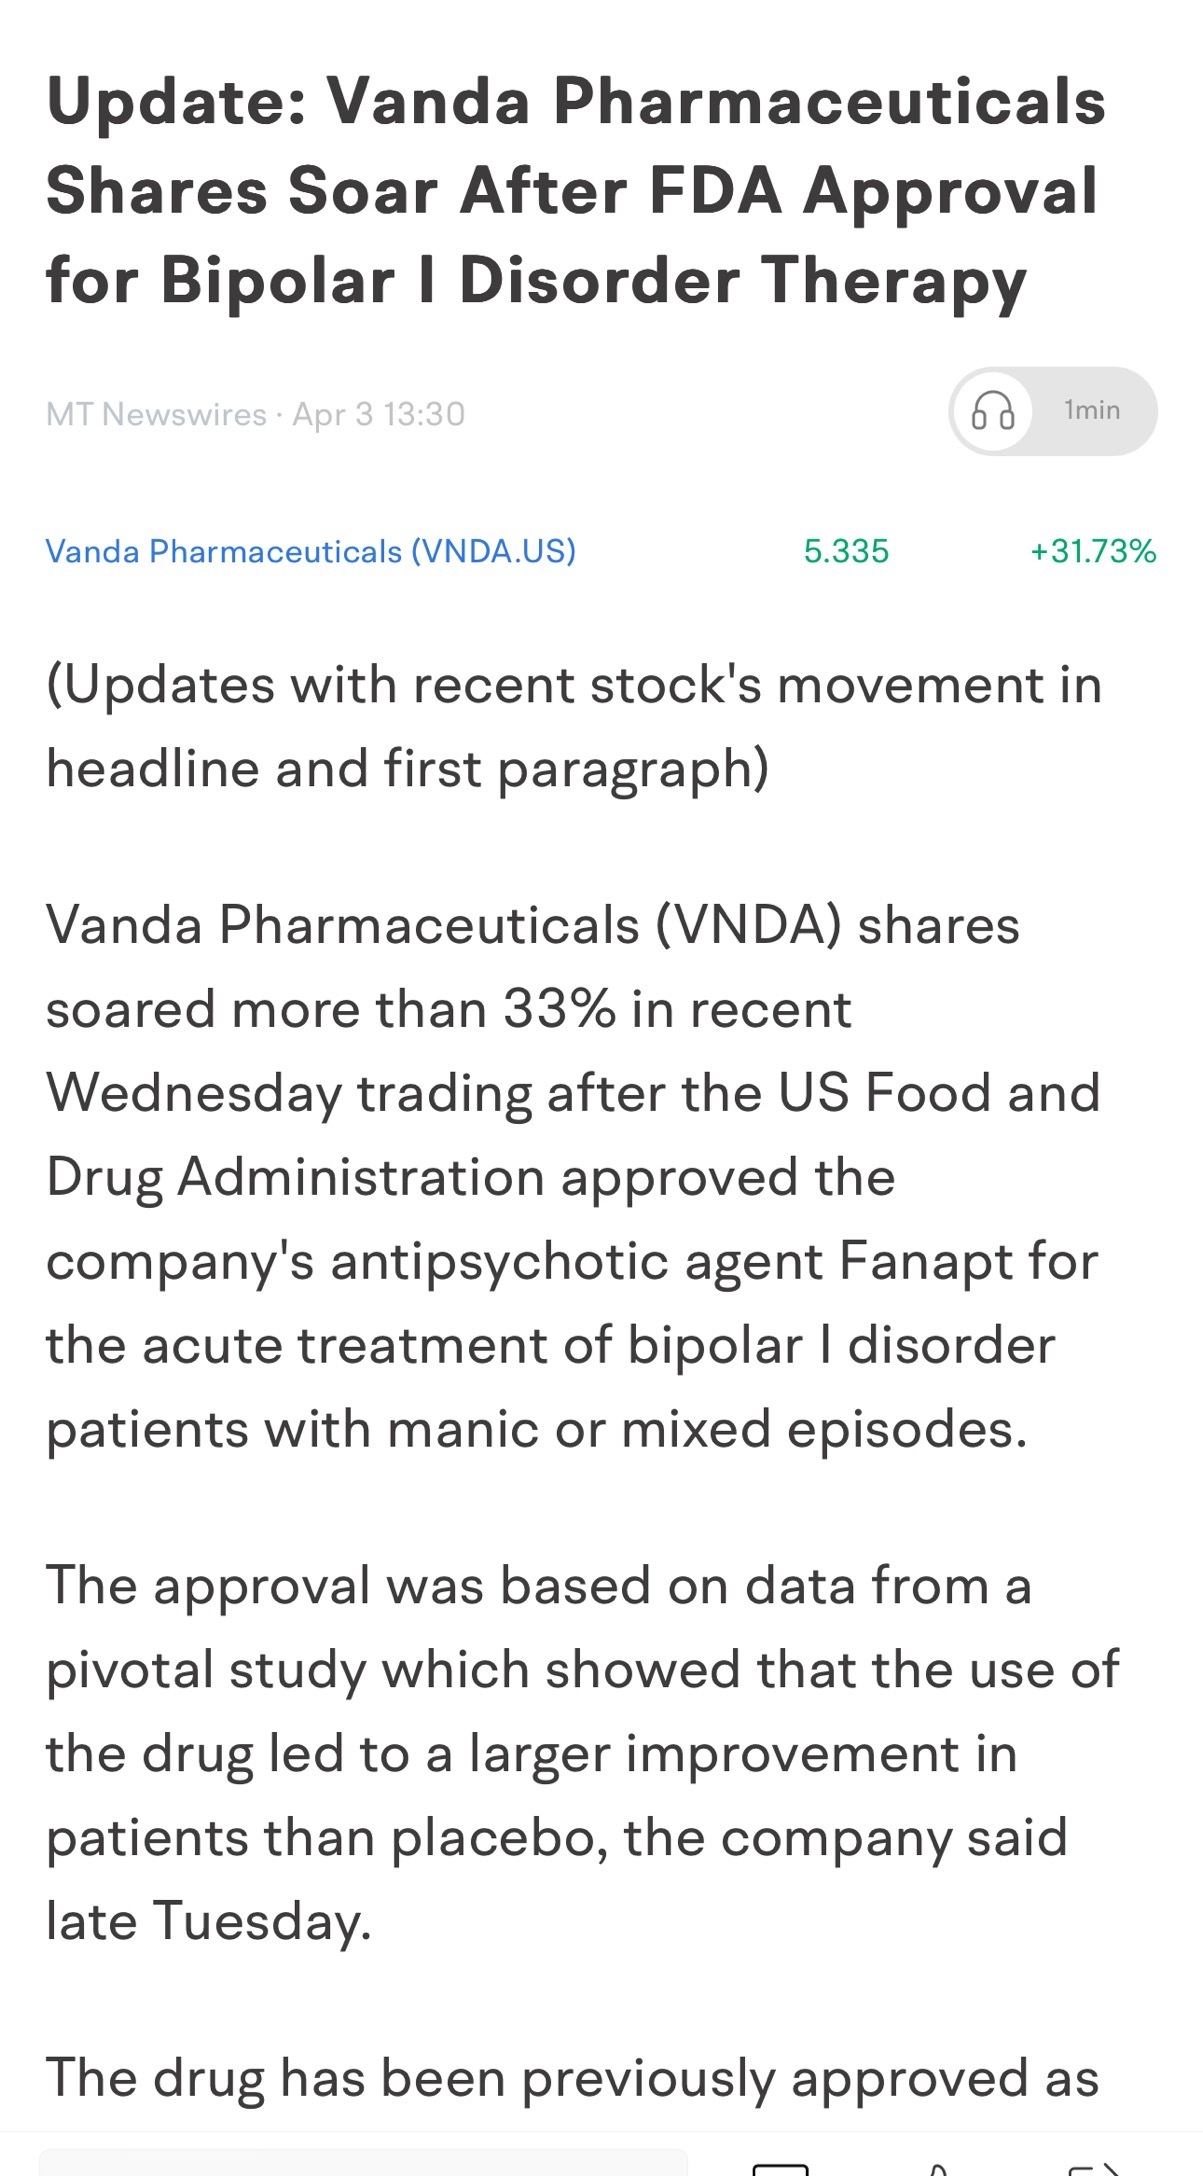 $萬達生物製藥 (VNDA.US)$ 這最近獲得了美國食品管理局批准對雙極性症。